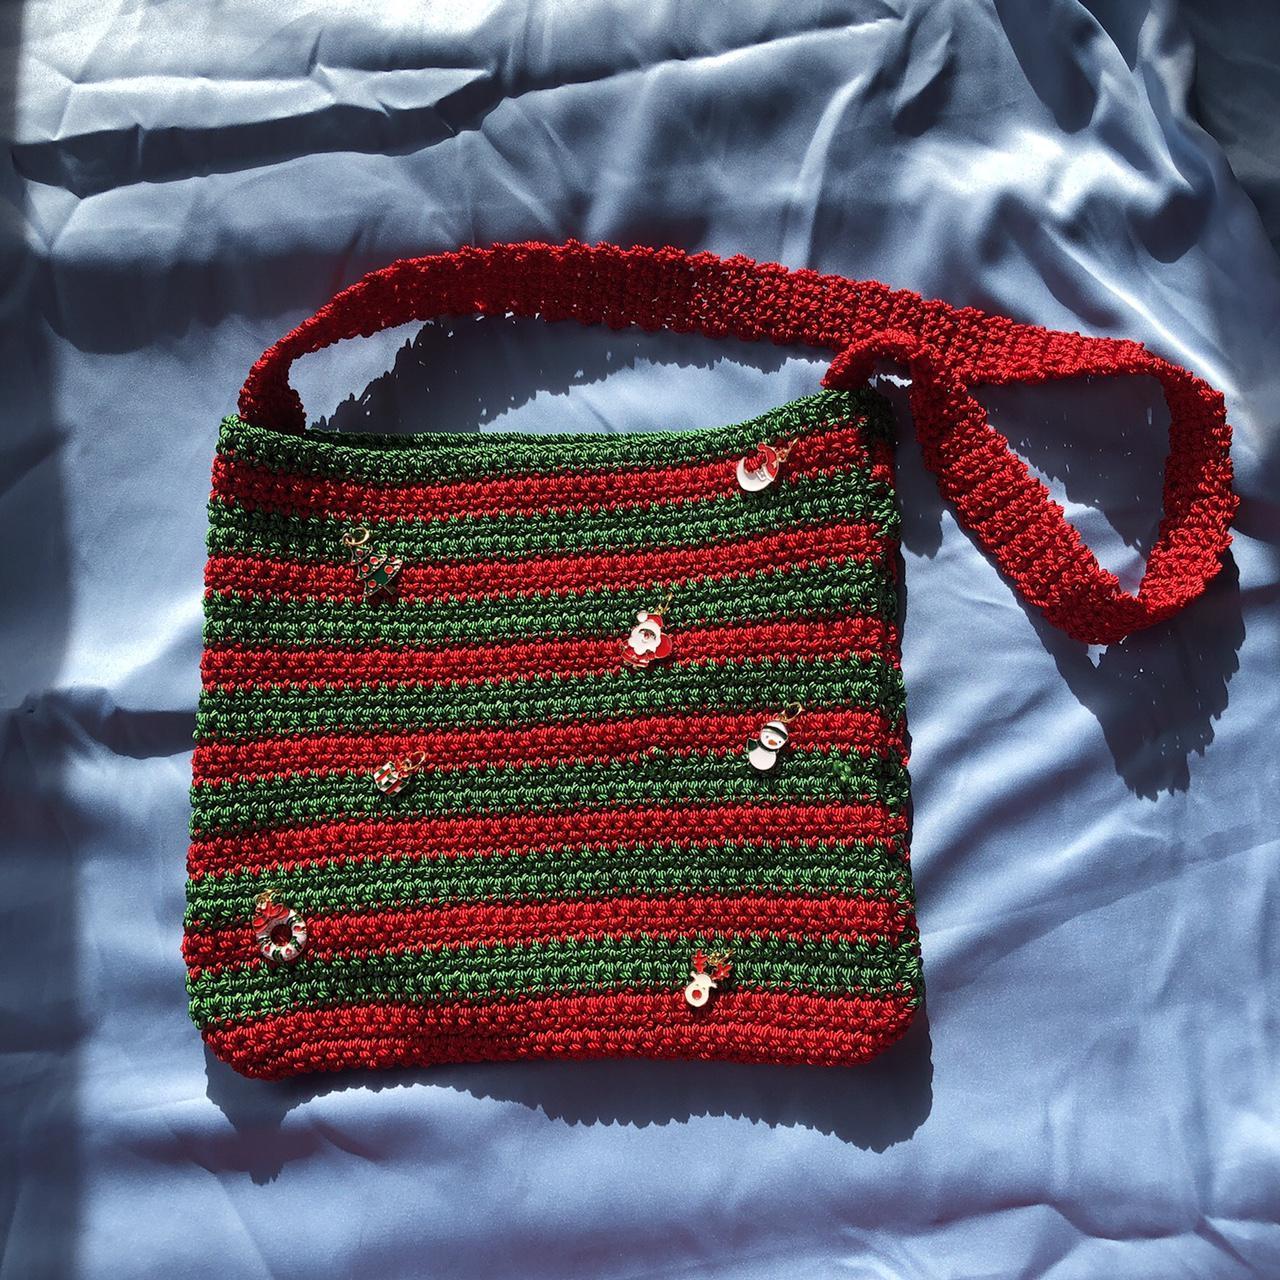 Product Image 2 - -Christmas Charms crochet bag
-APPROX: 8x8.5